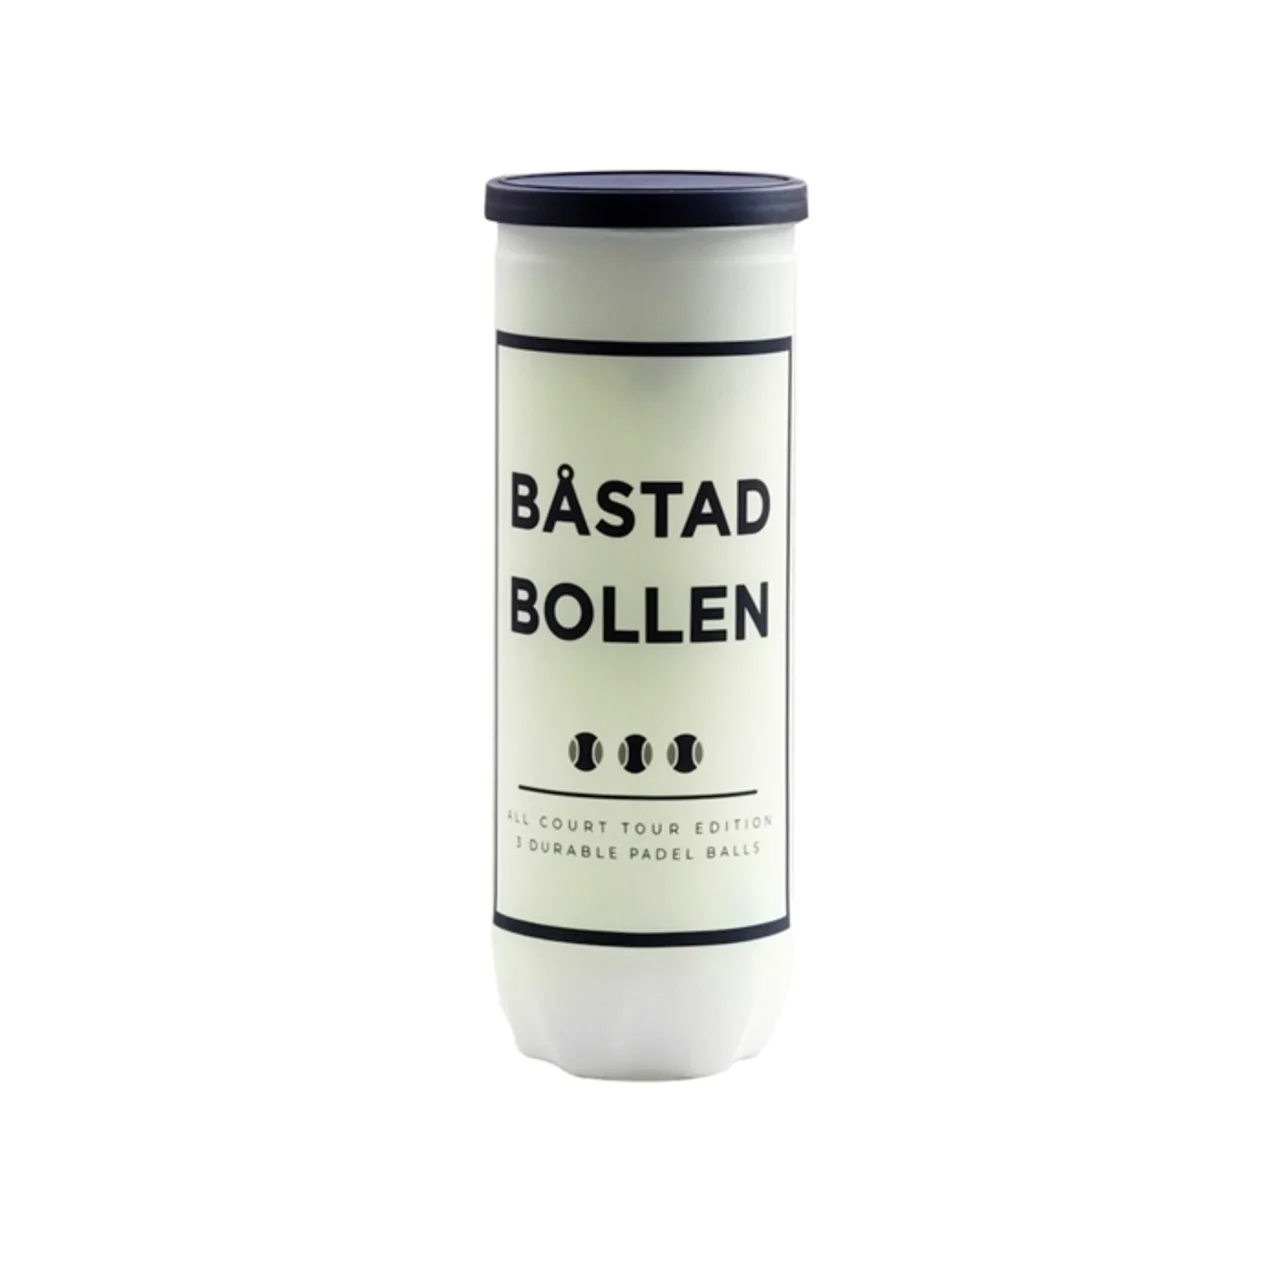 Båstad Bollen All Court Tour Edition Padel Ball 24 tubes